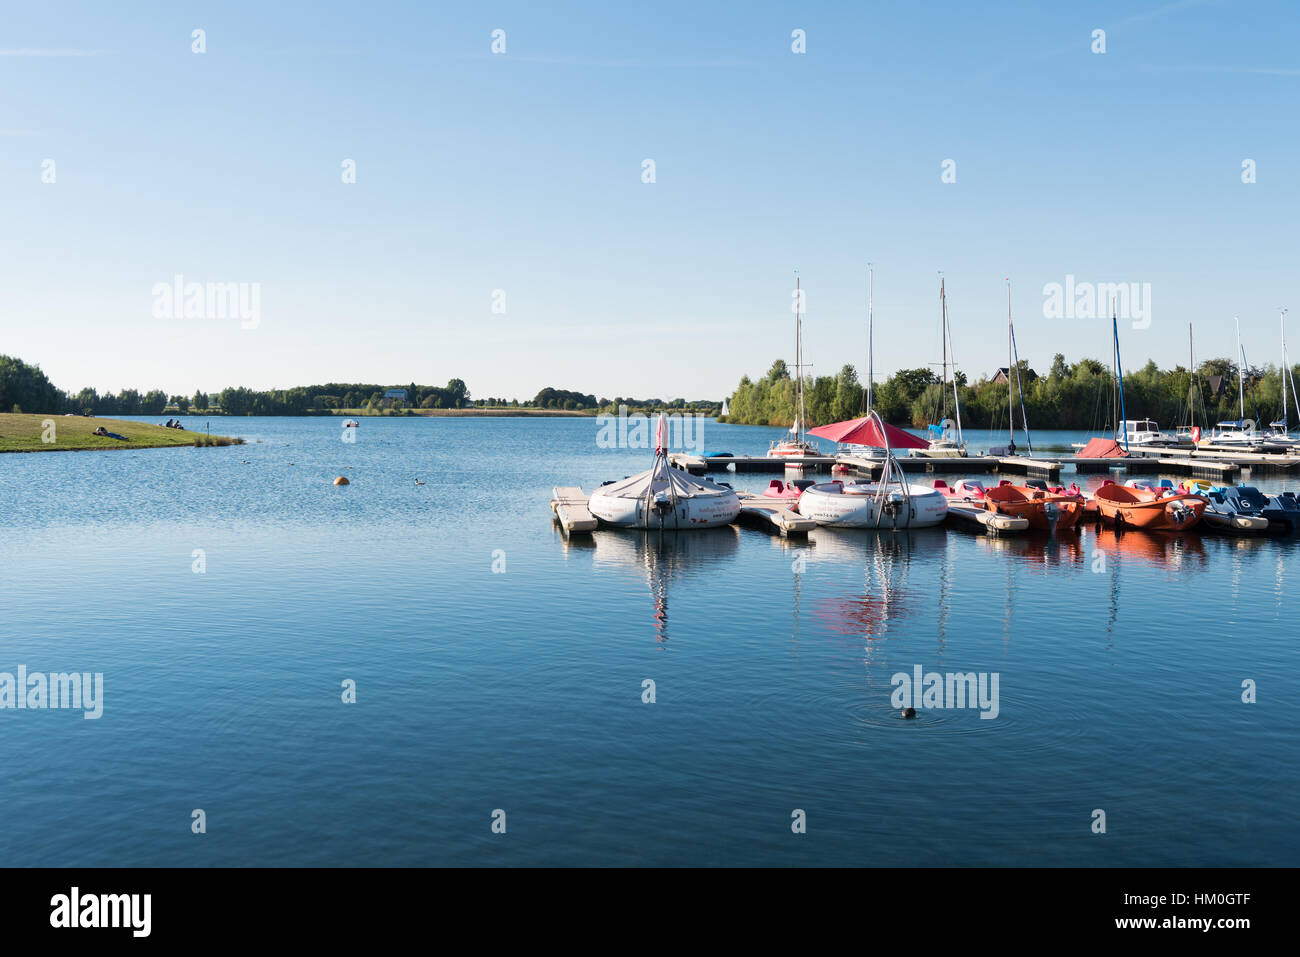 XANTEN, Deutschland - 7. September 2016: Xanten hat vielen künstlichen Seen, die Touristen und Einwohner zum Wassersport und Entspannen einladen Stockfoto